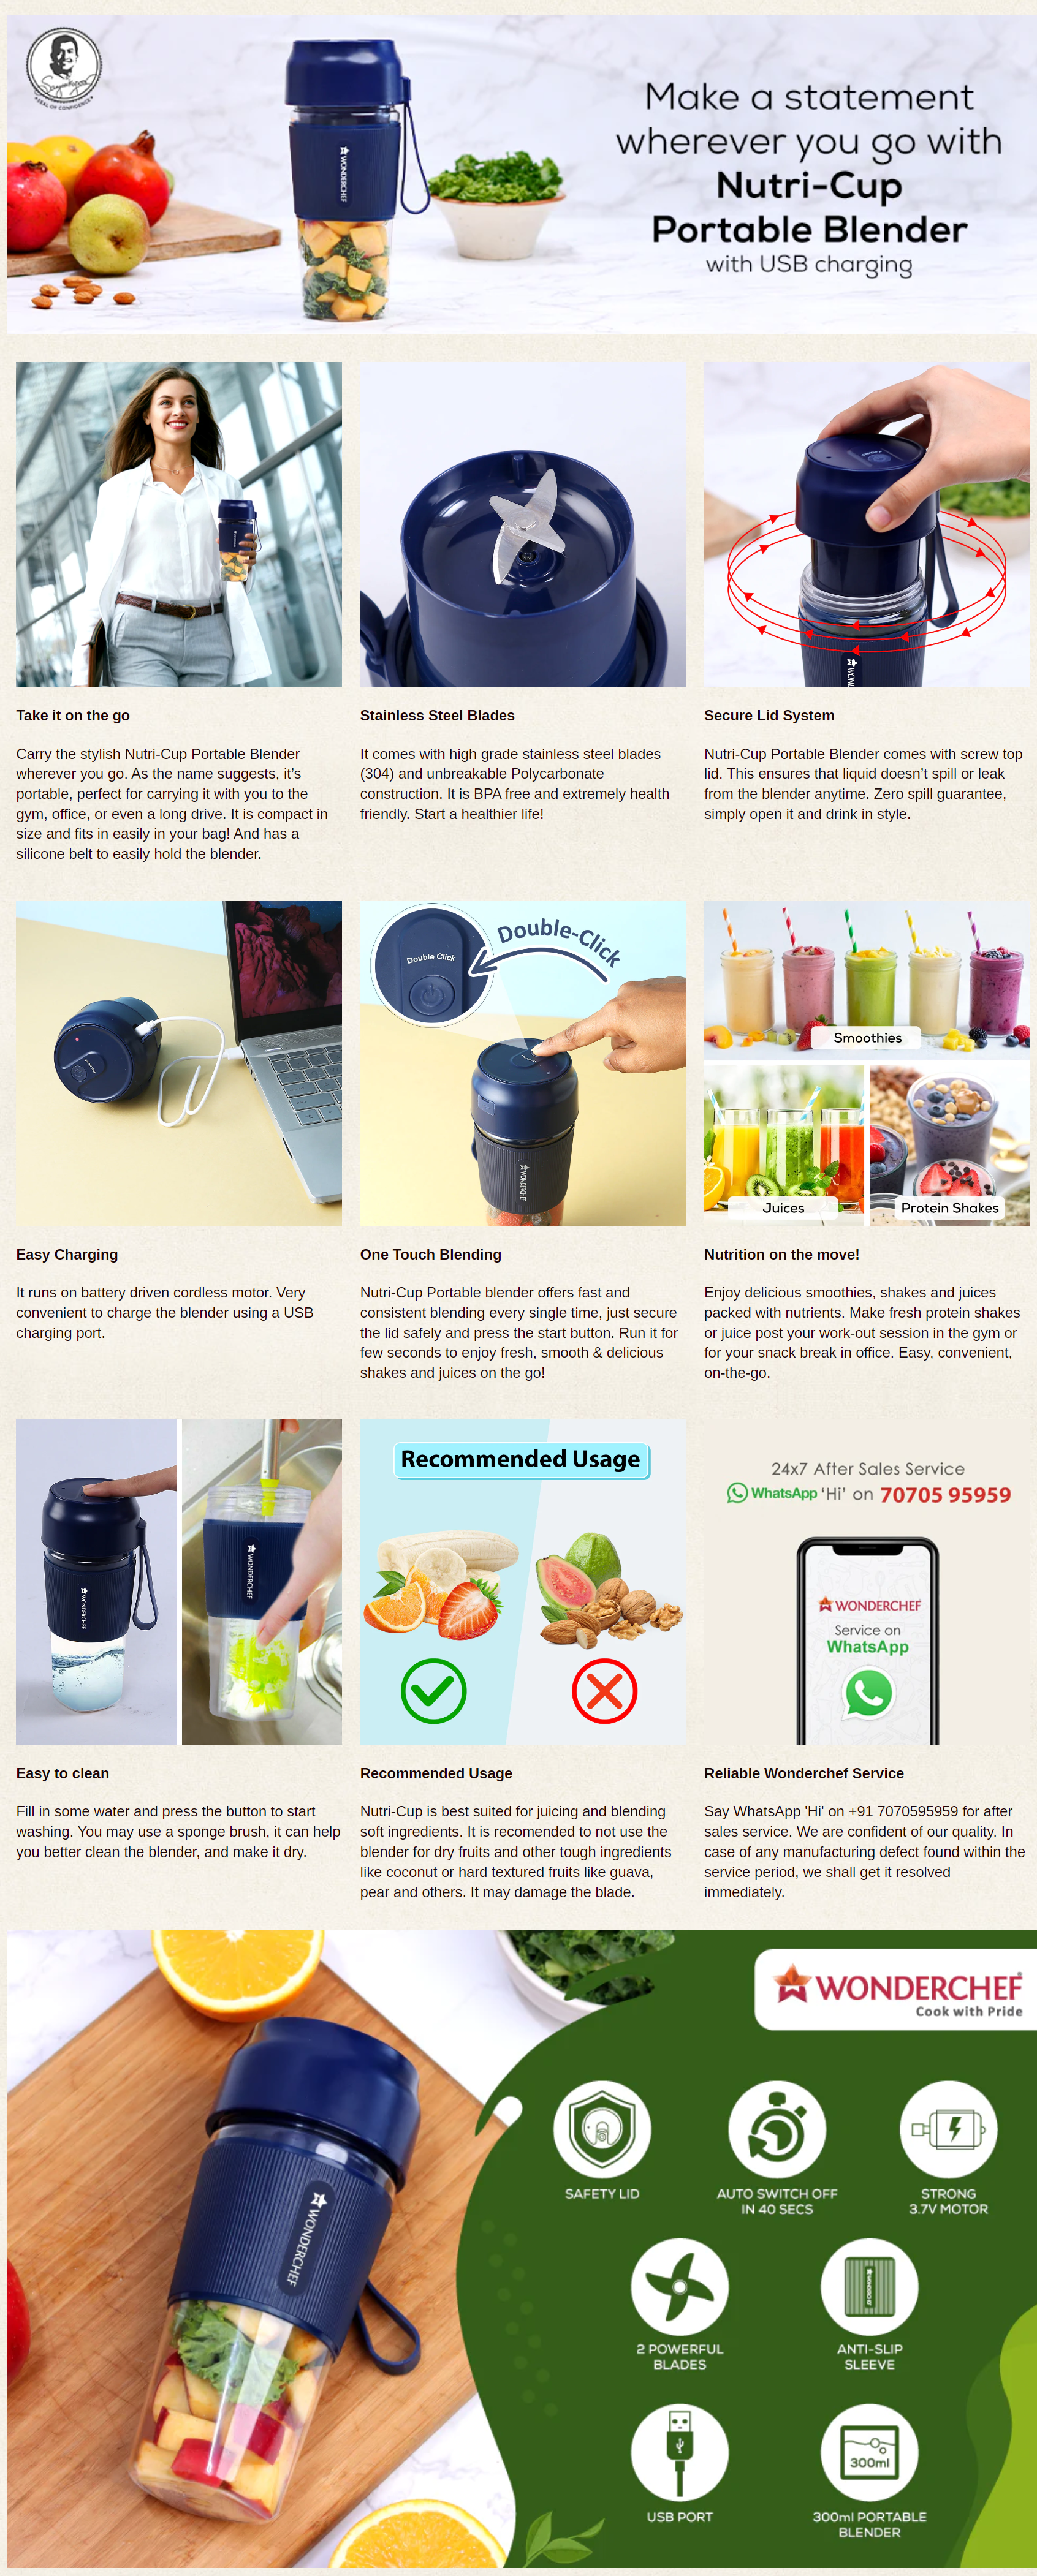 Nutri-Cup Portable Blender, USB Charging, Smoothie maker